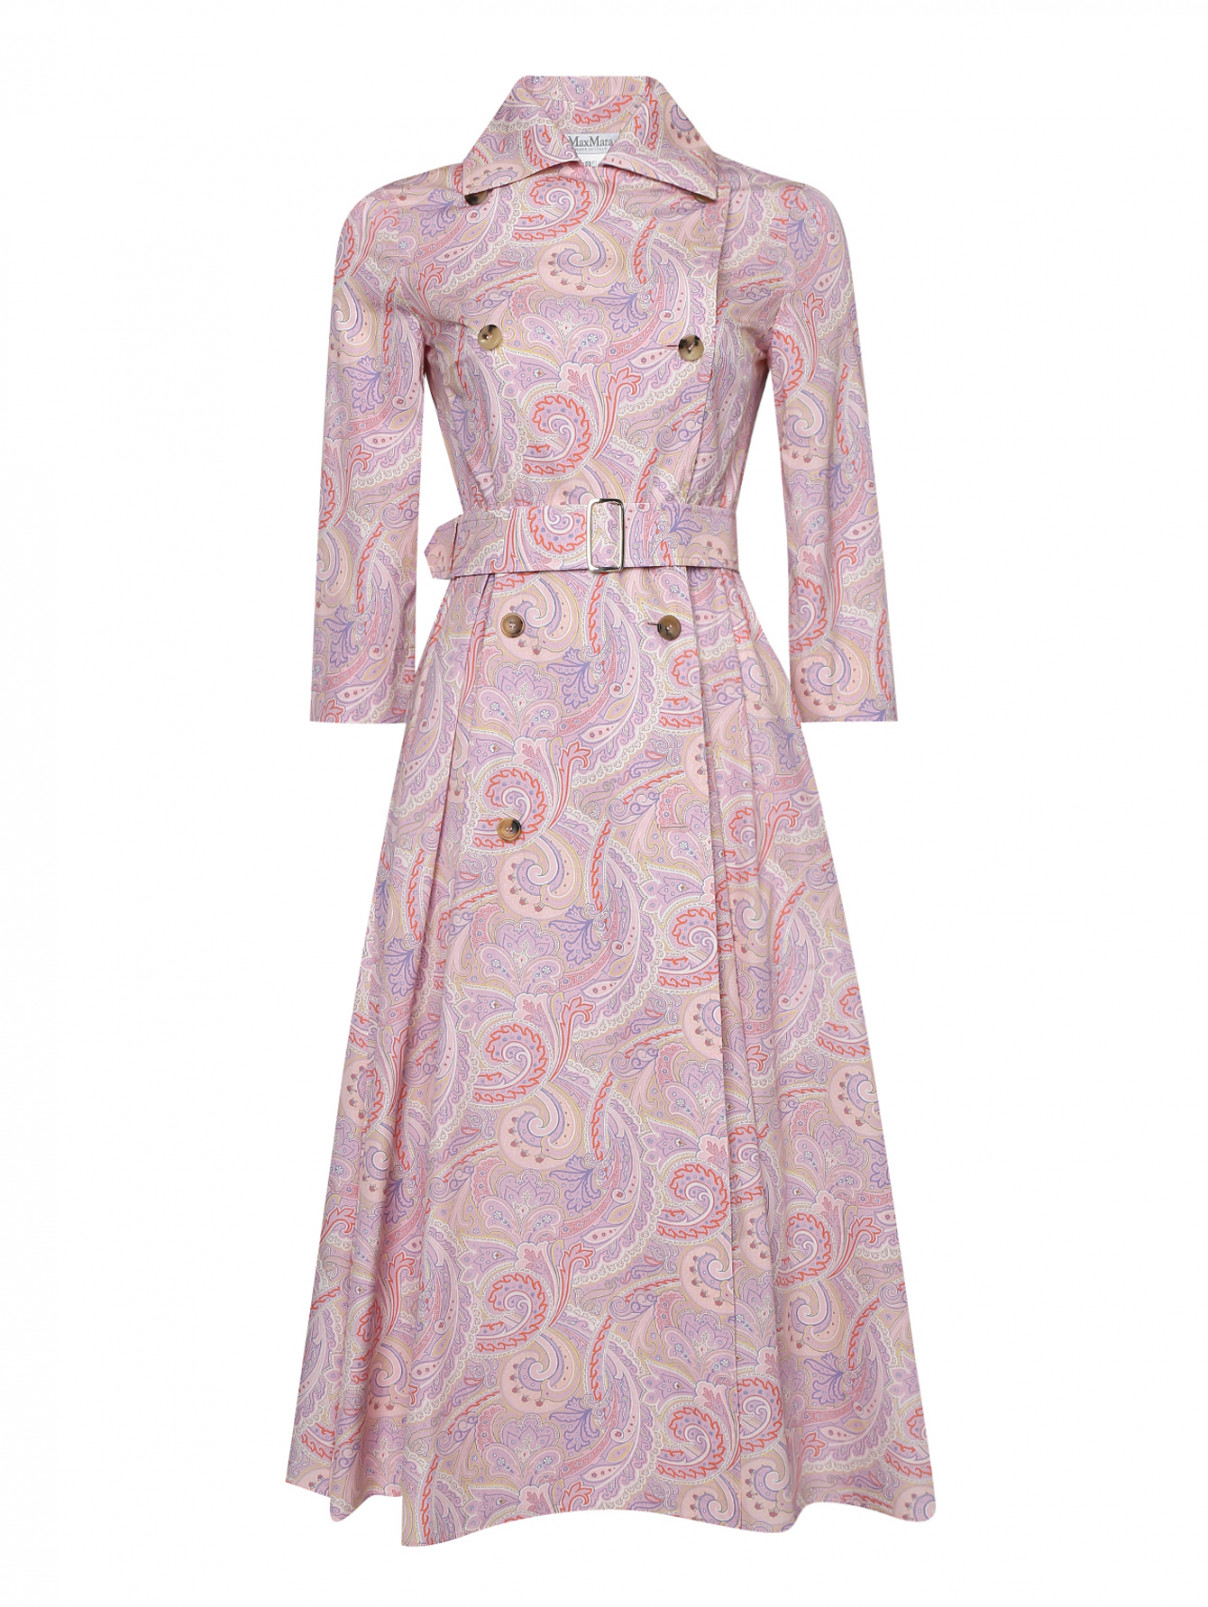 Платье с узором из хлопка Max Mara  –  Общий вид  – Цвет:  Розовый